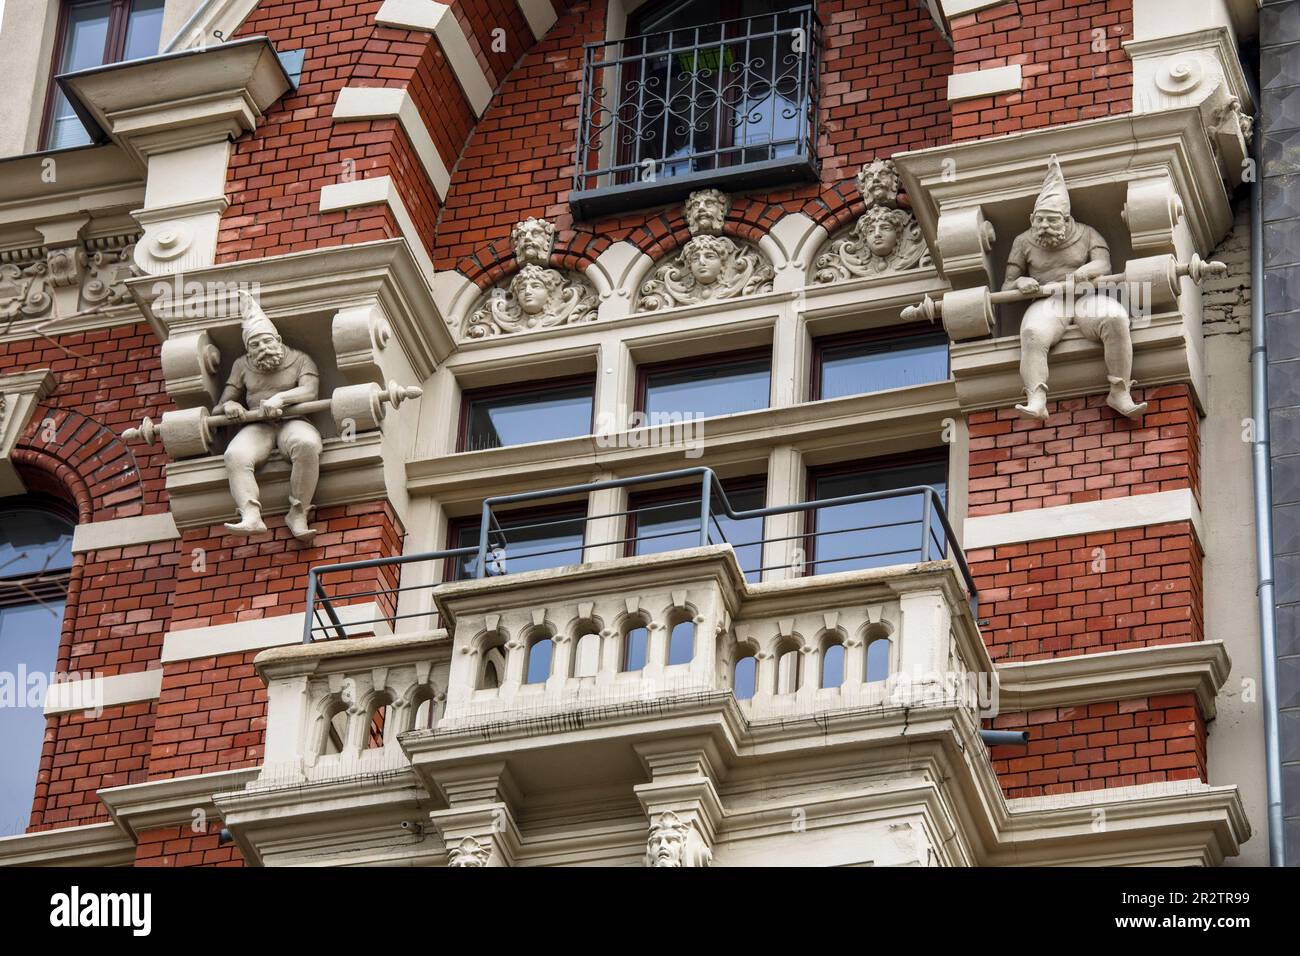 Heinzemaennchen Gnom an der Fassade eines alten Gebäudes in Hansaring, Köln. Heinzemaennchen Skulpturen an der Fassade eines Altbaus am Han Stockfoto